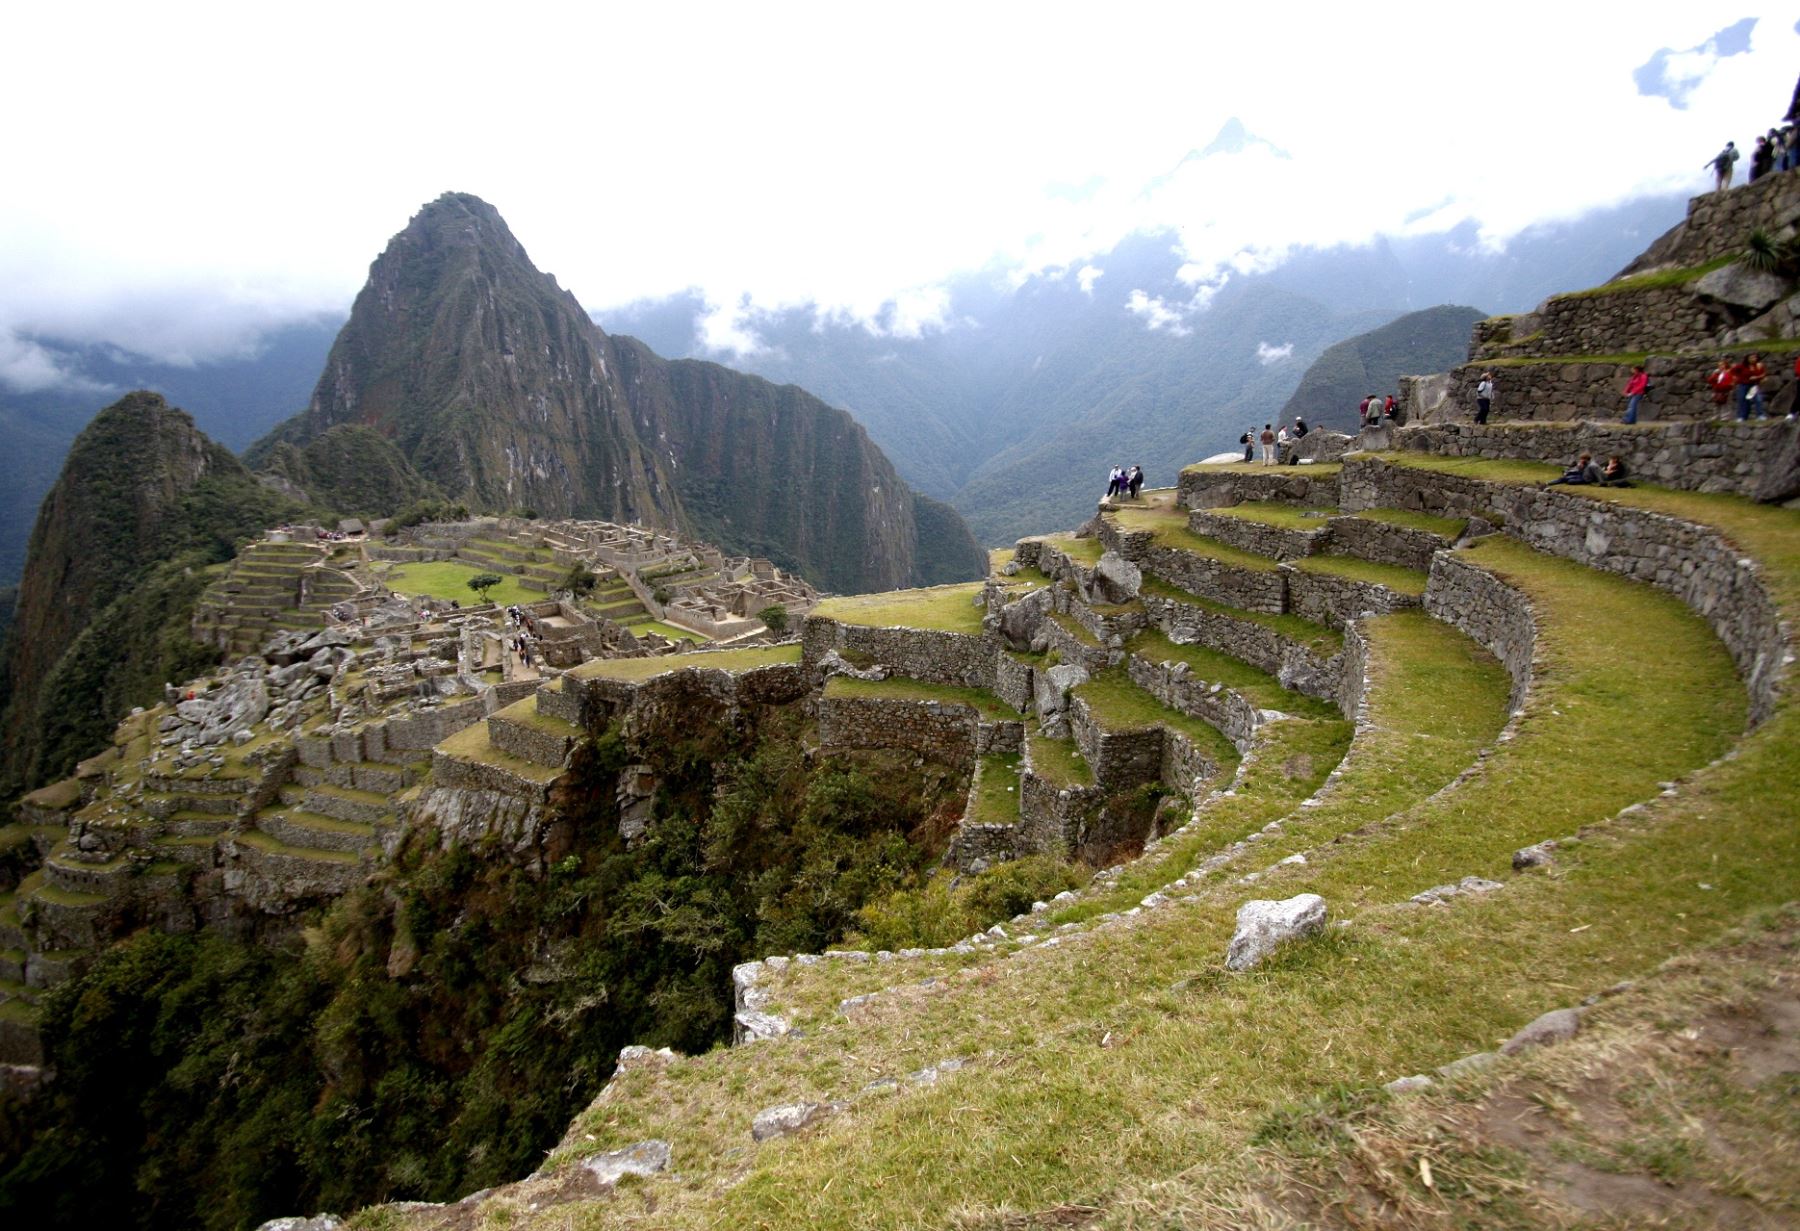 Los incas decidieron construir la ciudadela de Machu Picchu en un lugar donde se encuentran varias fallas geológicas, revela un nuevo estudio publicado por la Sociedad Geológica de Estados Unidos, según dio a conocer BBC Mundo. ANDINA/Archivo